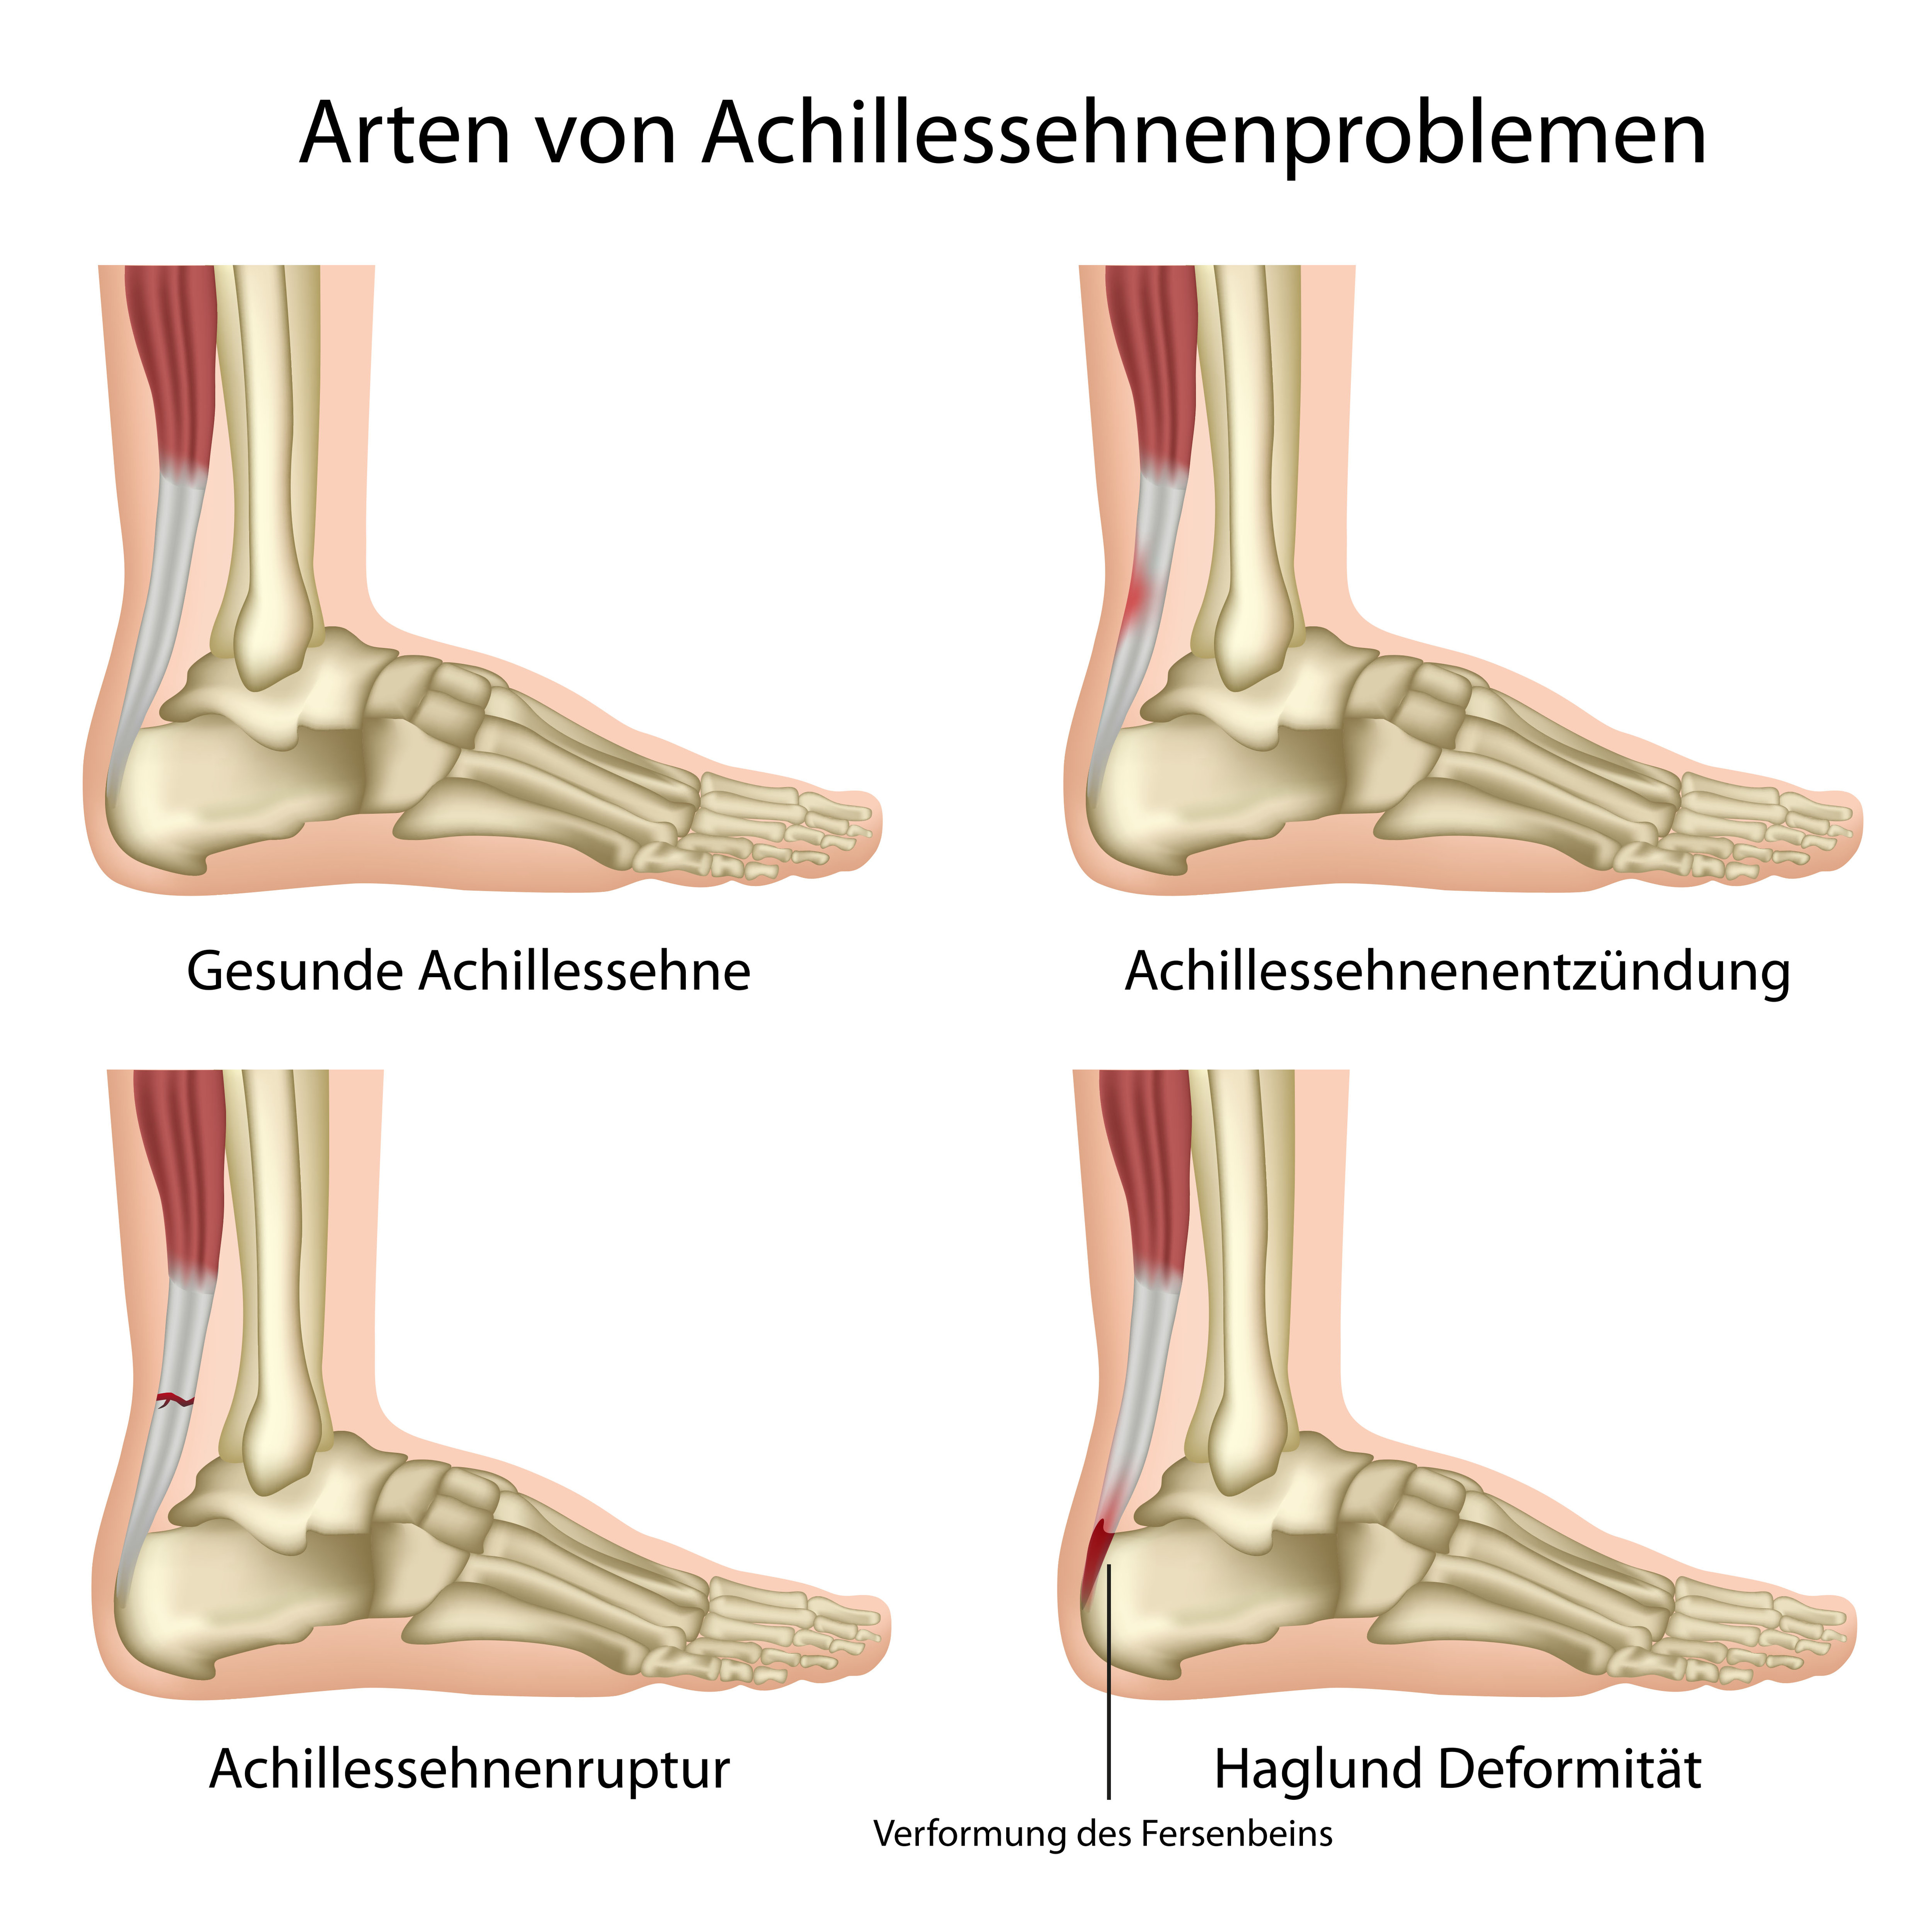 Schmerzen der Achillessehne kÃ¶nnen verschiedene Ursachen haben. 